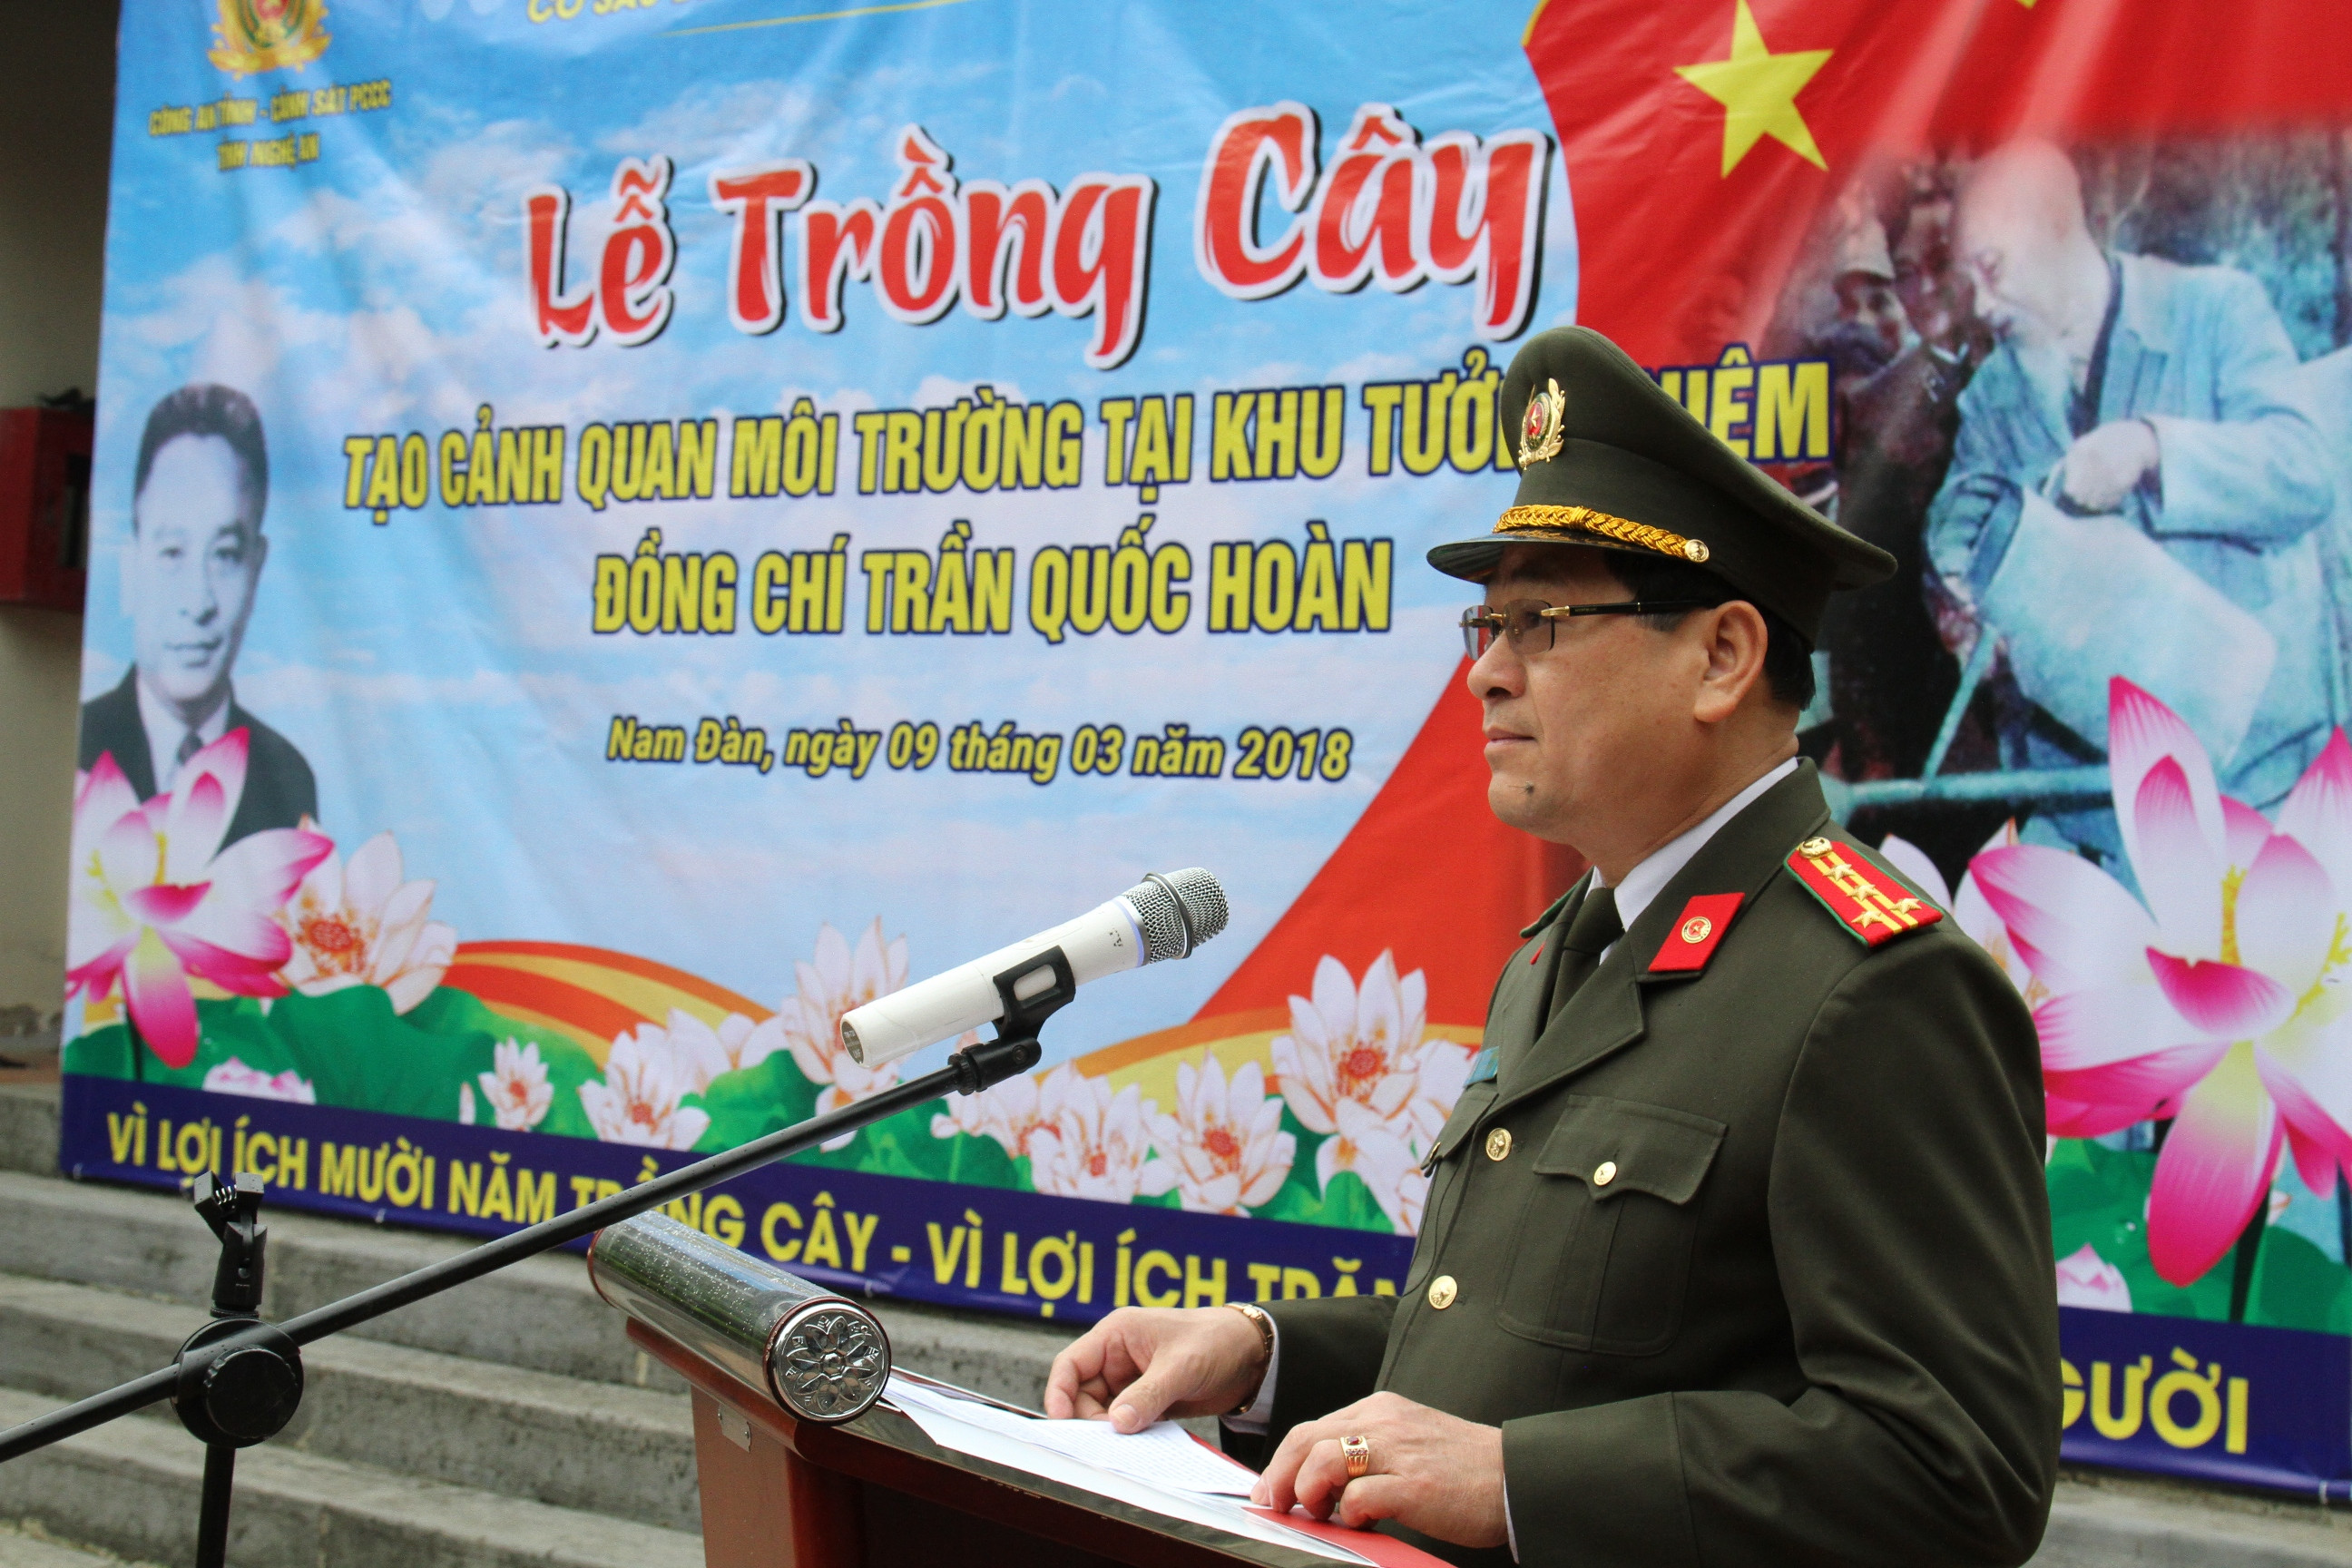 Đại tá Nguyễn Hữu Cầu - Giám đốc Công an Nghệ An phát động lễ trồng cây. Ảnh: Hà Thư